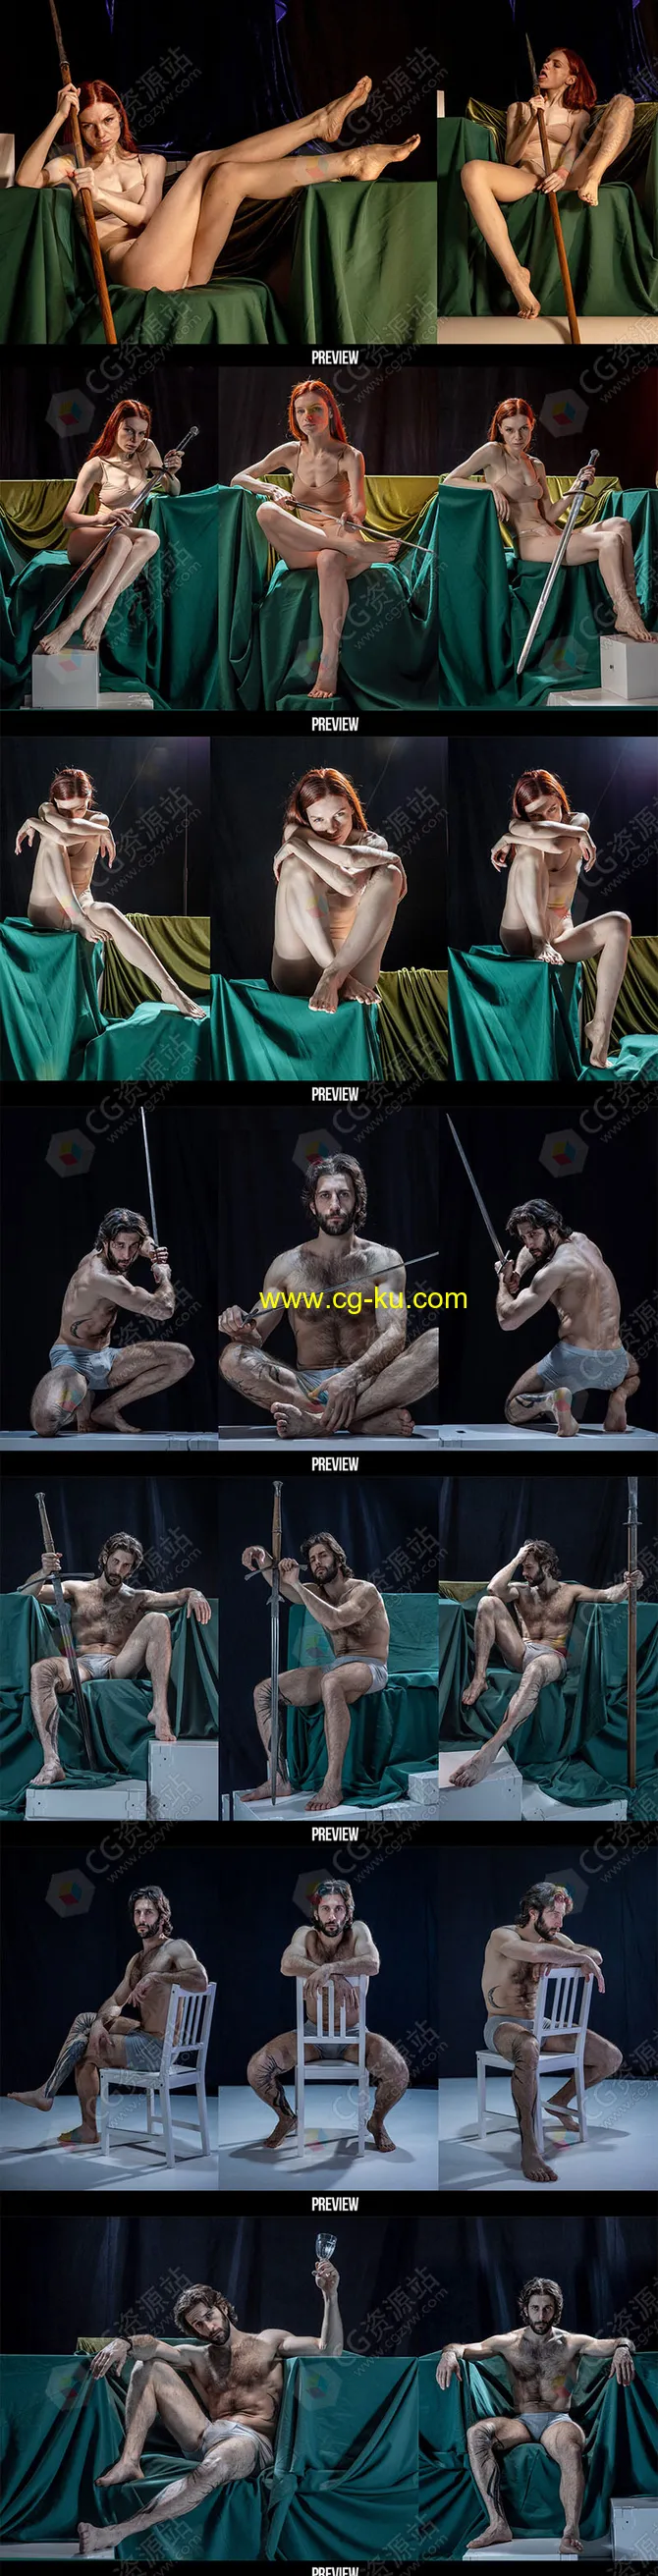 730张男性和女性坐姿艺术姿势造型高清参考图片的图片1